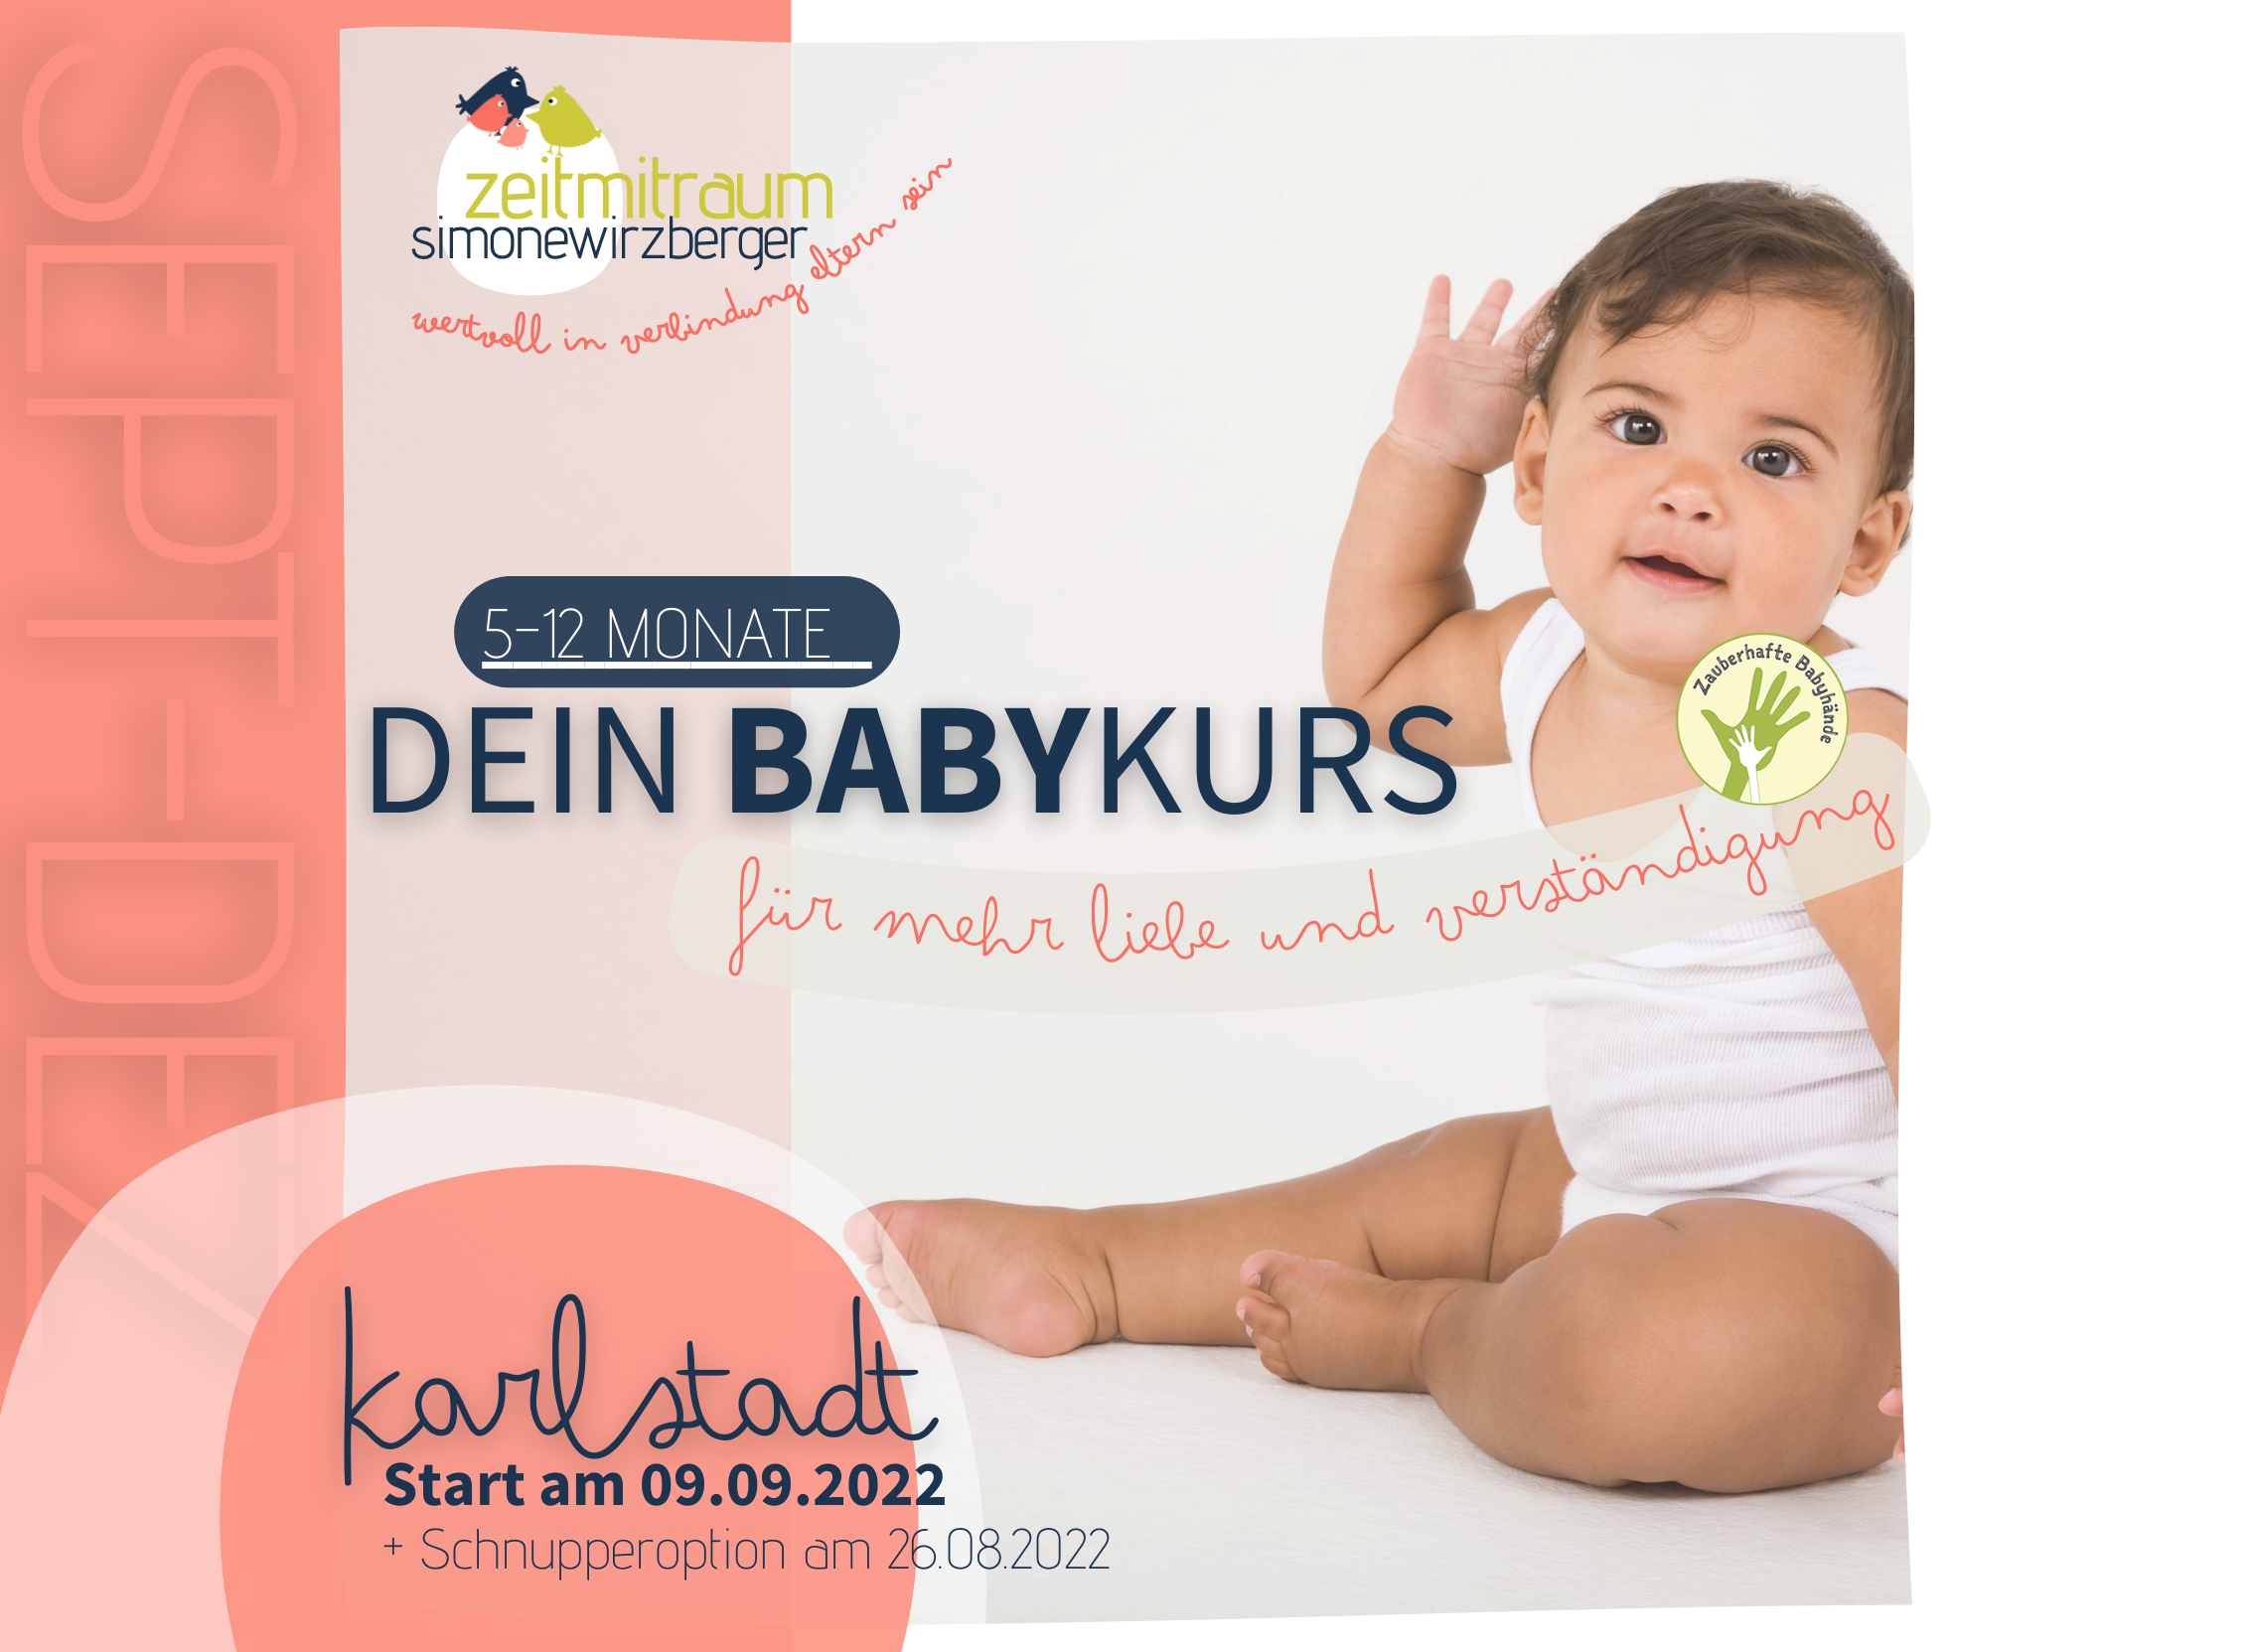 DEIN BABYKURS – Karlstadt [5-12 Monate]